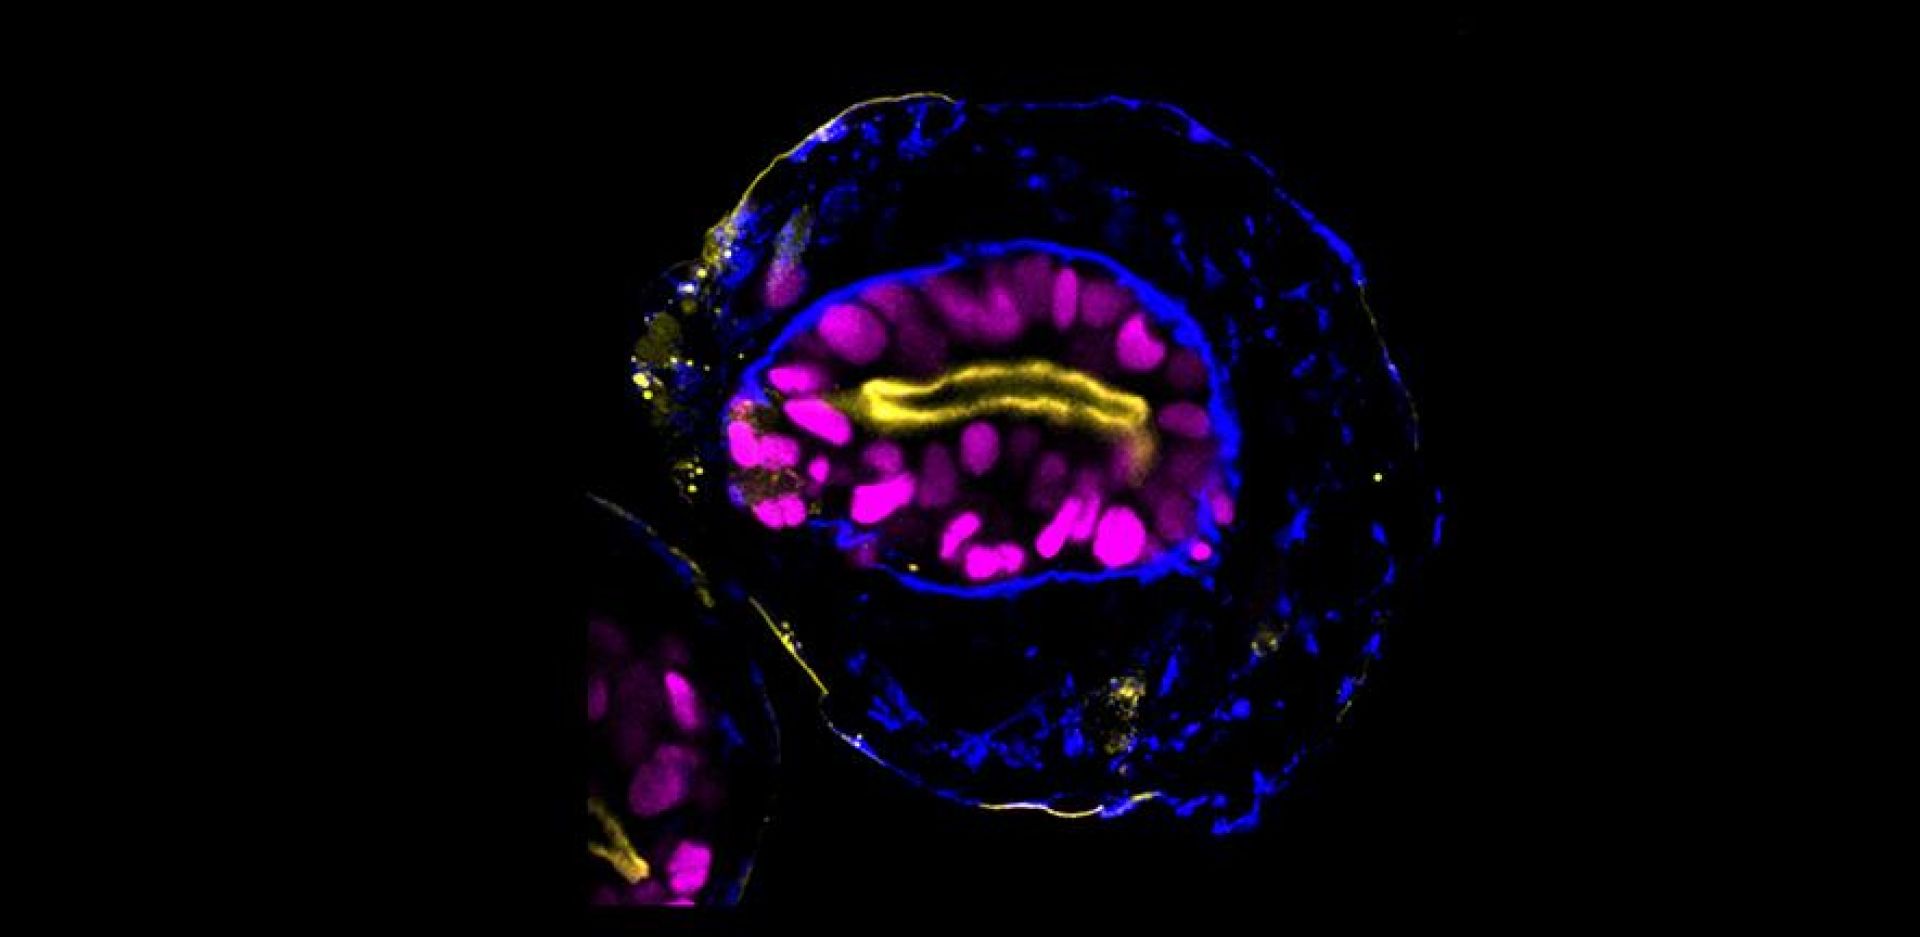 Δημιουργία μοντέλων που μοιάζουν με ανθρώπινα έμβρυα από βλαστικά κύτταρα για την κατανόηση των πρώτων σταδίων της ανθρώπινης ανάπτυξης